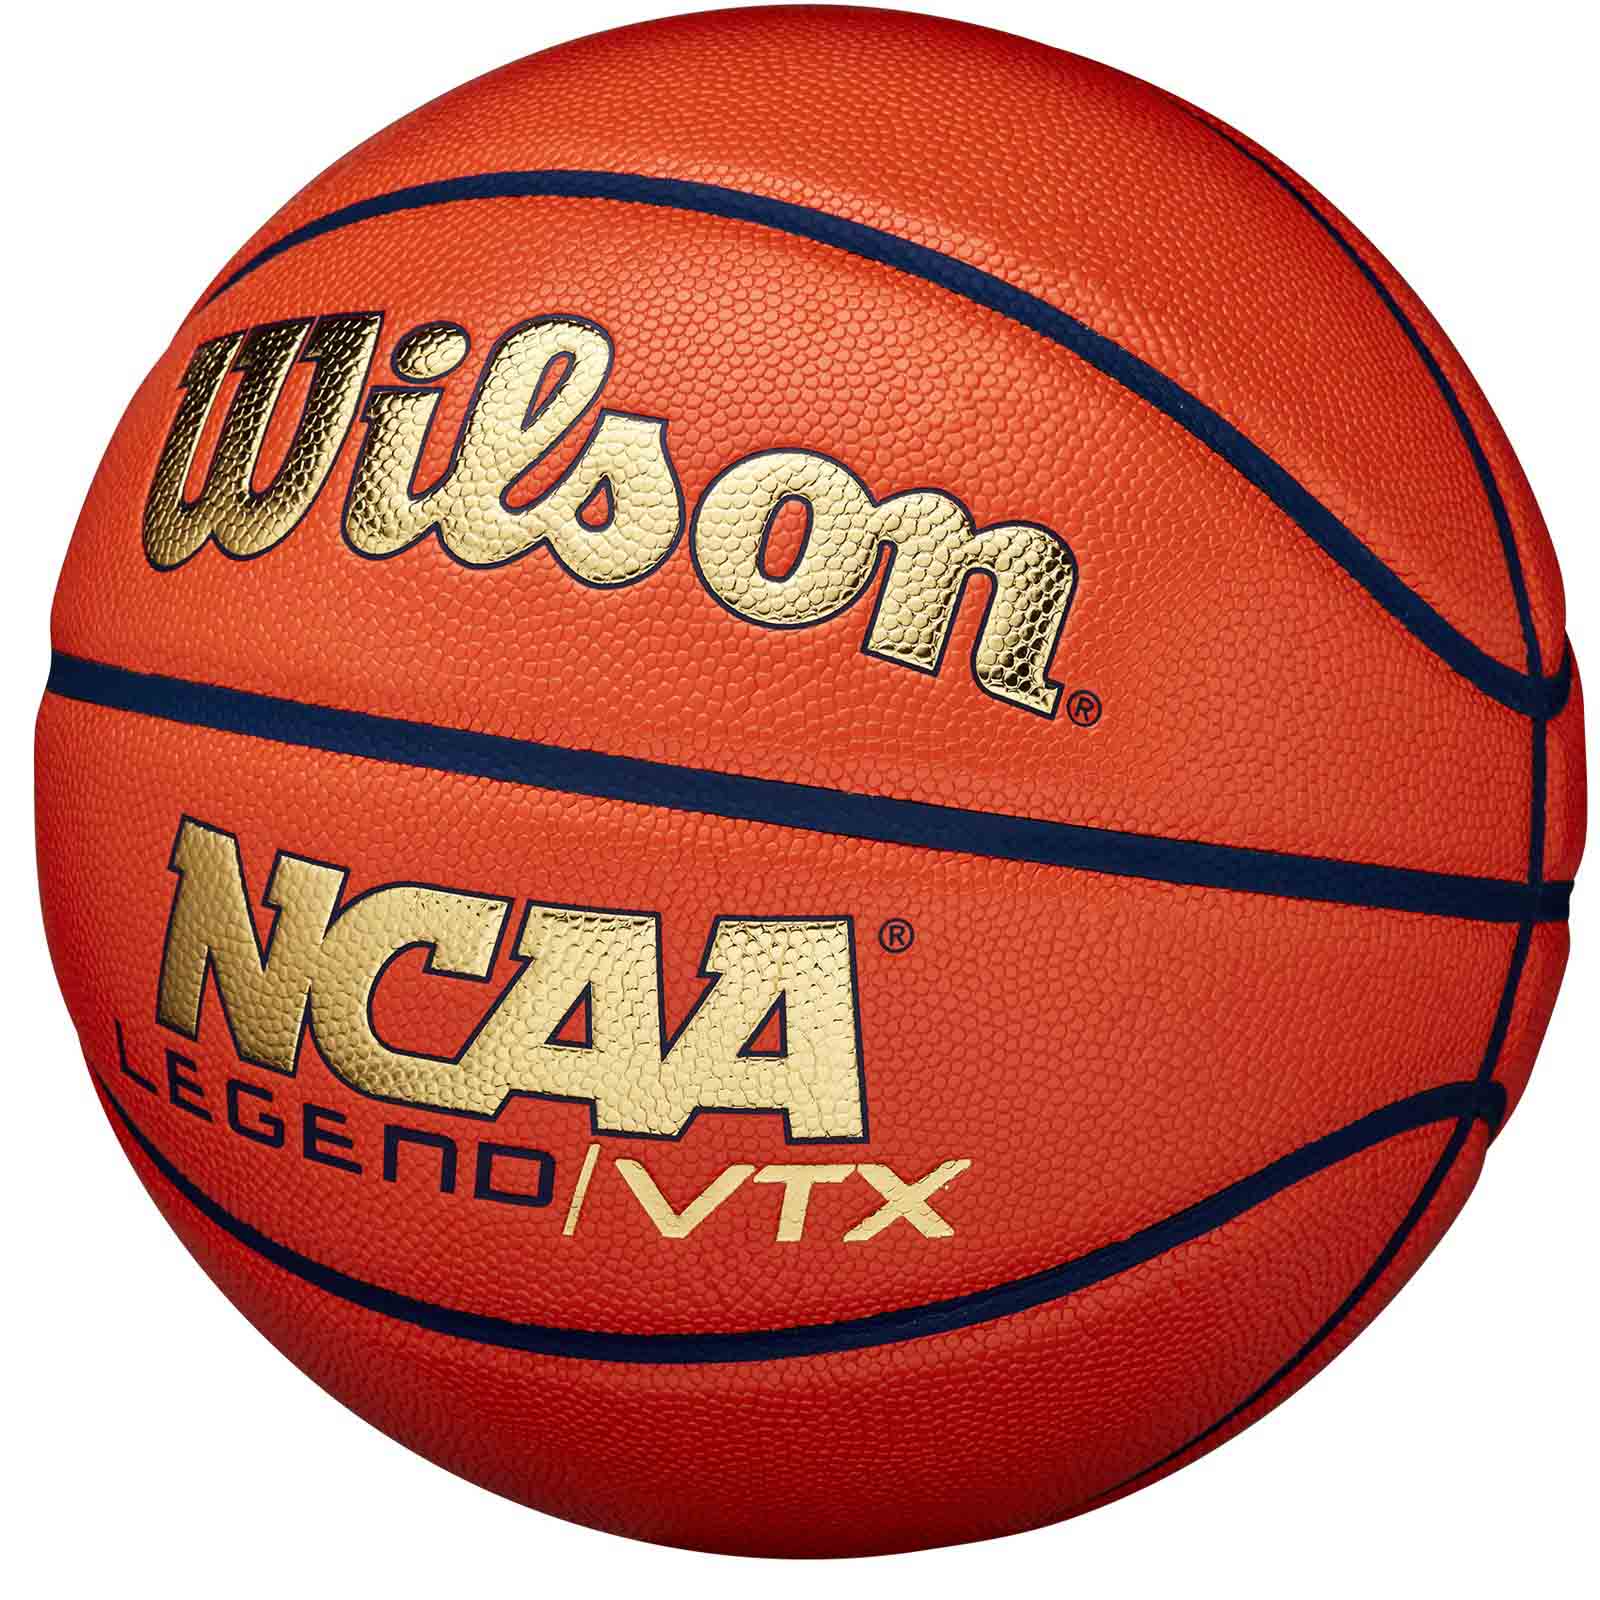 WILSON NCAA LEGEND VTX BASKETBALL - SIZE 7